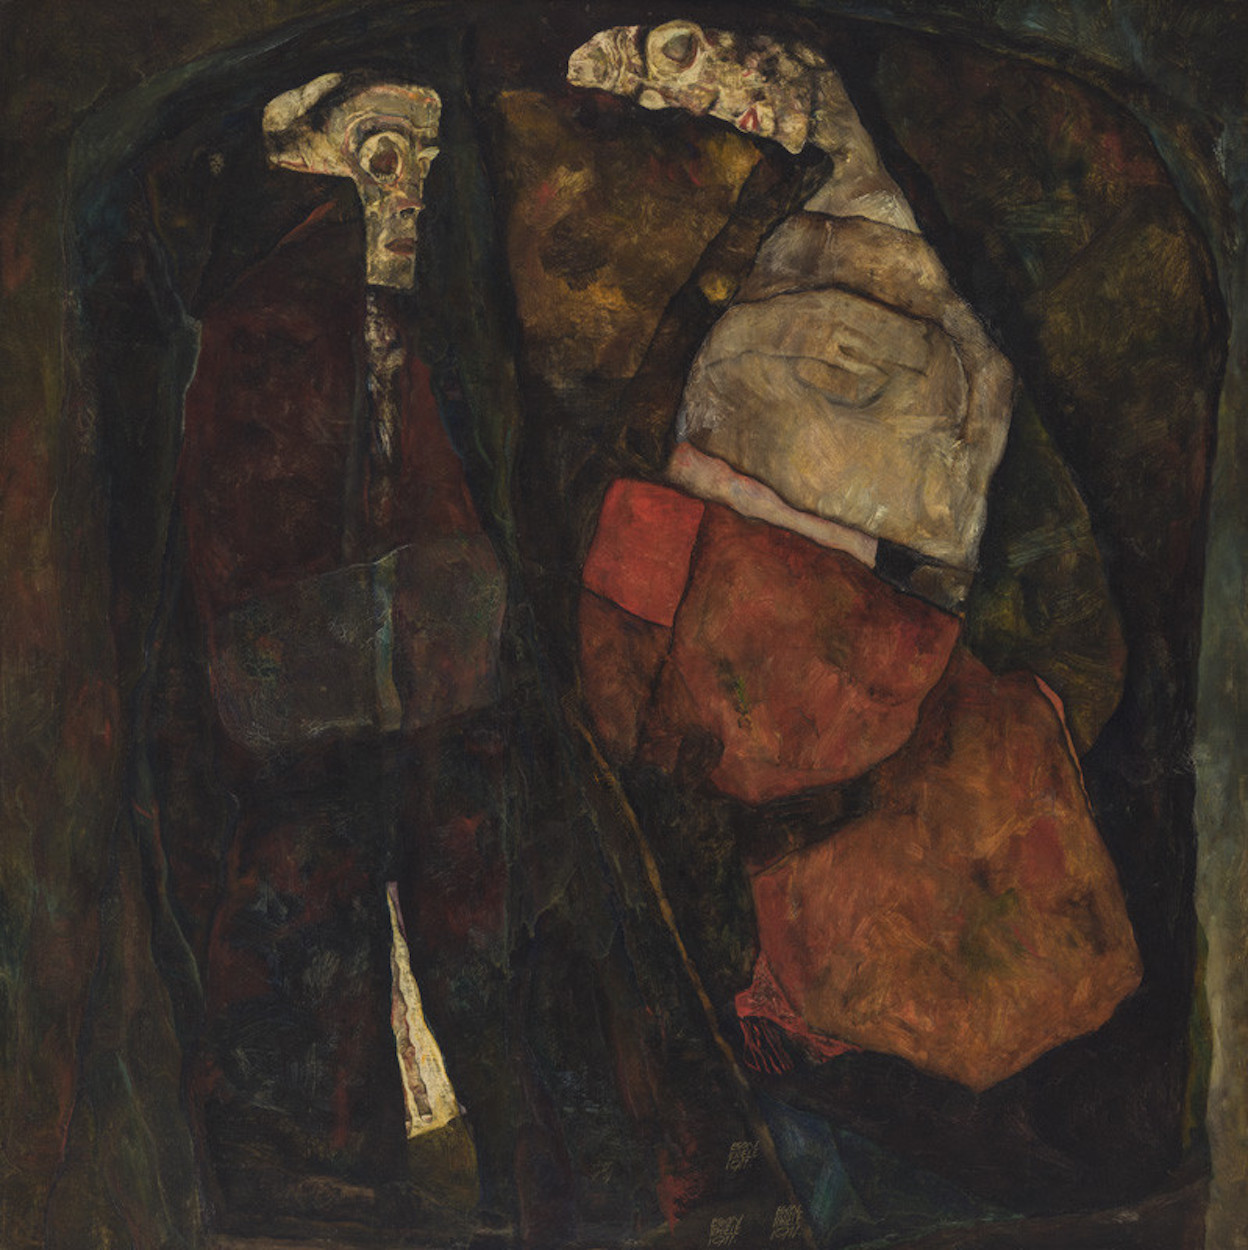 妊婦と死（母と死） by Egon Schiele - 1911年 - 100 x 100 cm 